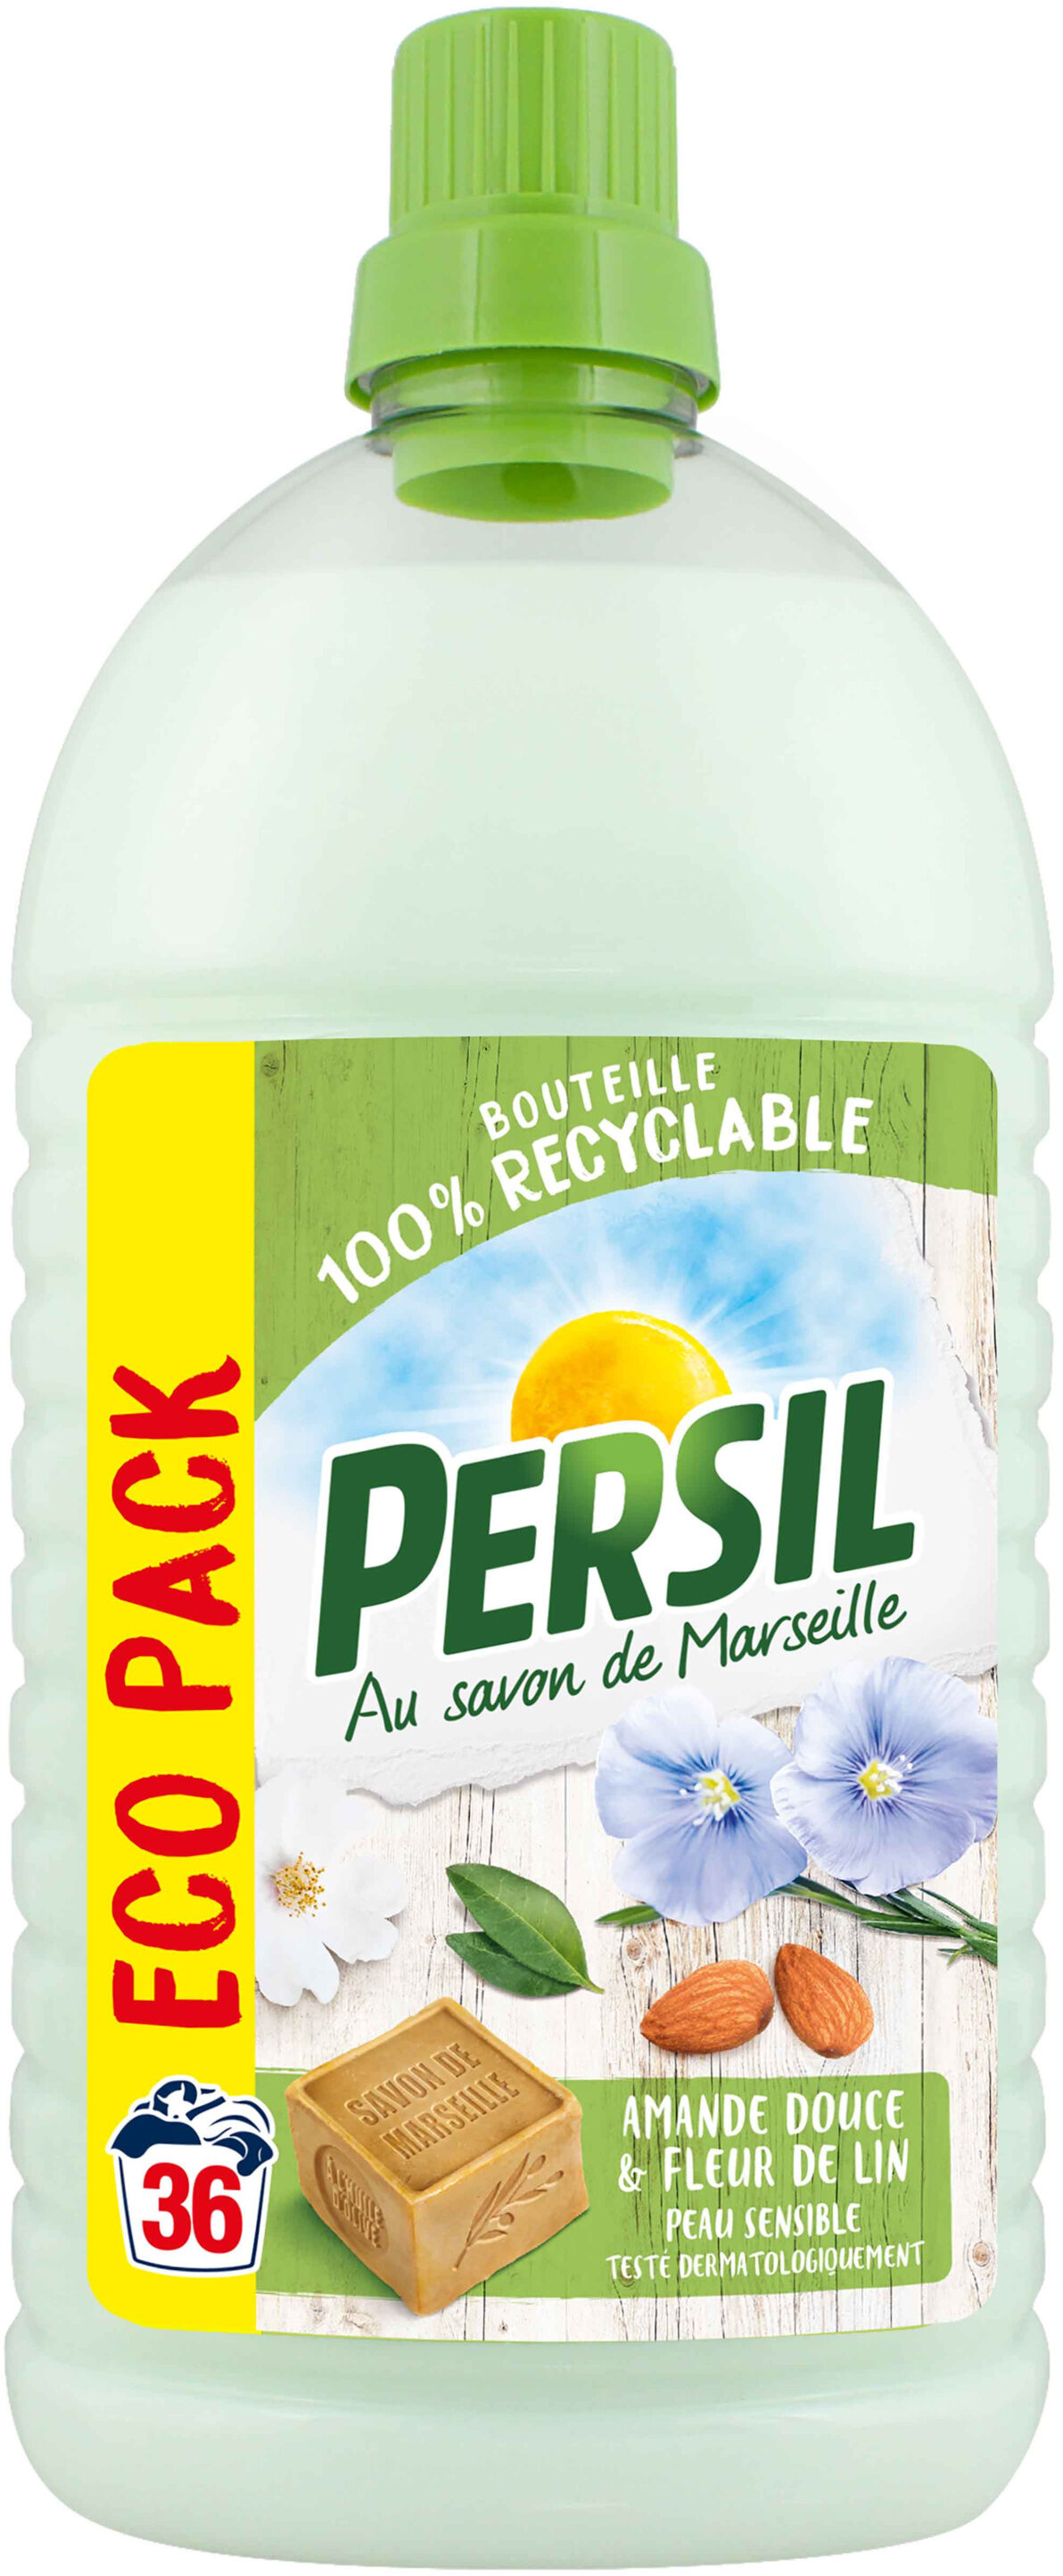 PERSIL Lessive Liquide Peau Sensible Amande Douce Eco Pack 1,8l 36 Lavages - Product - fr